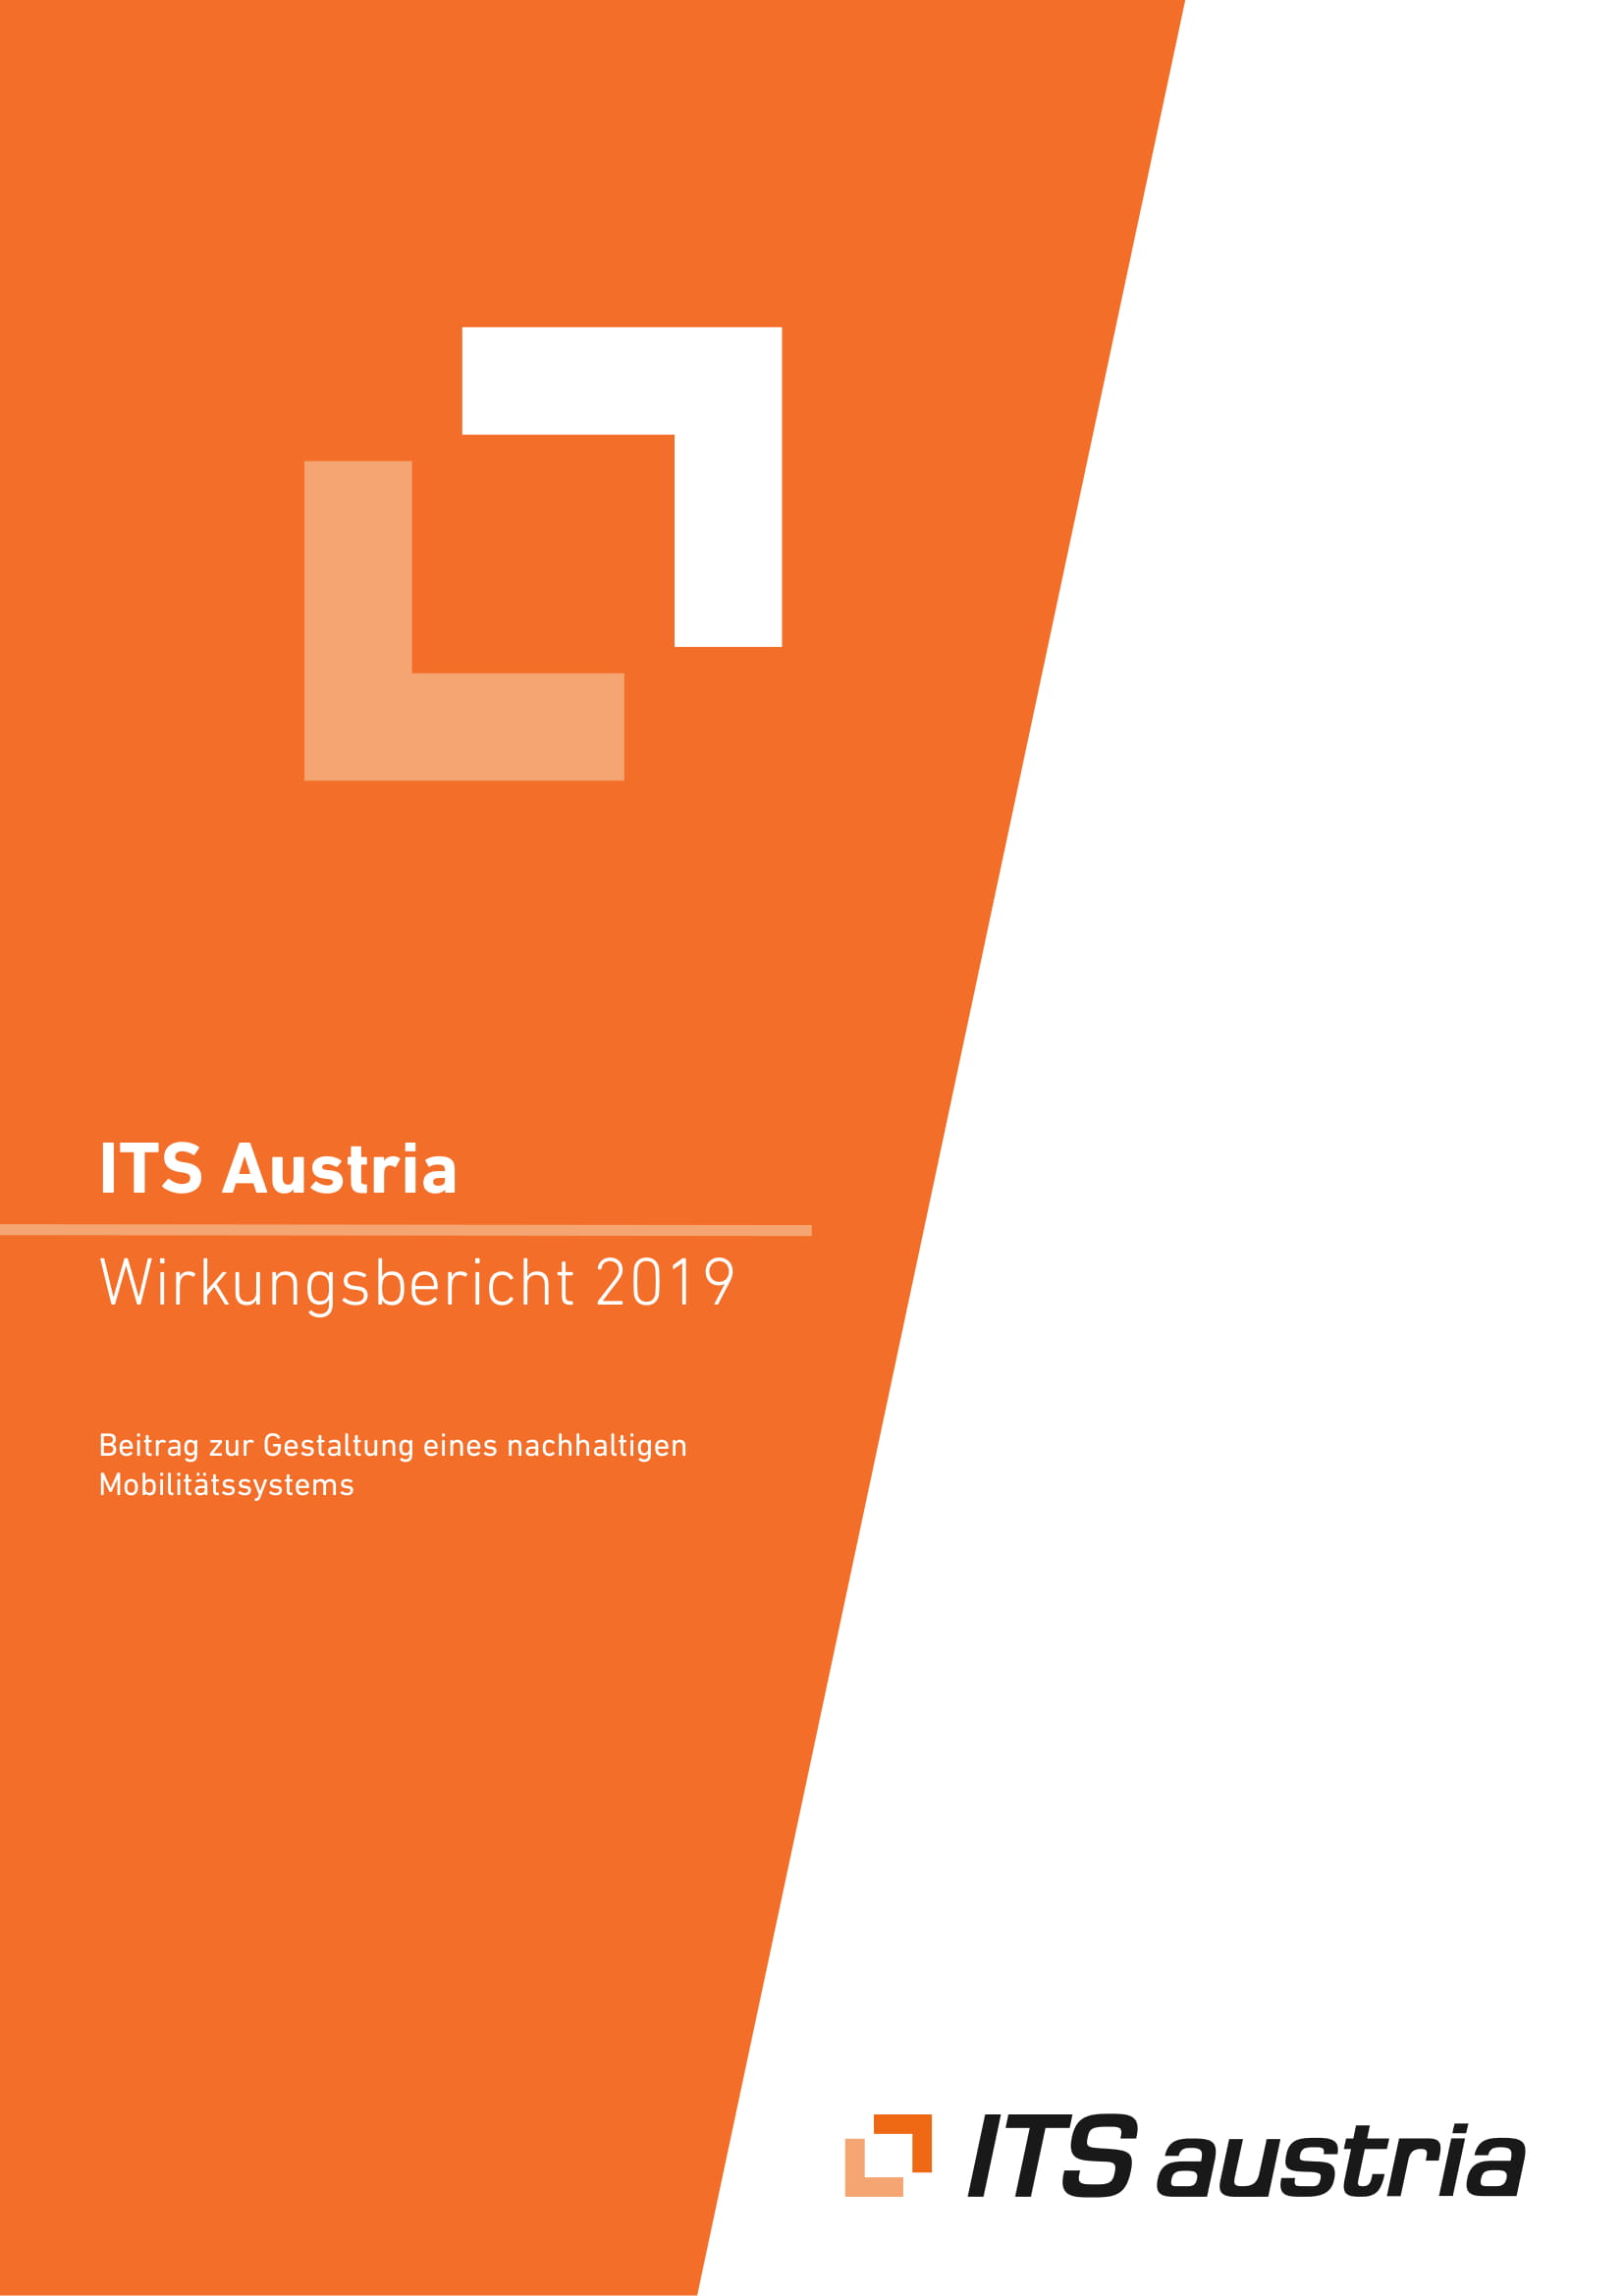 2020_ITS Austria Wirkungsbericht2019